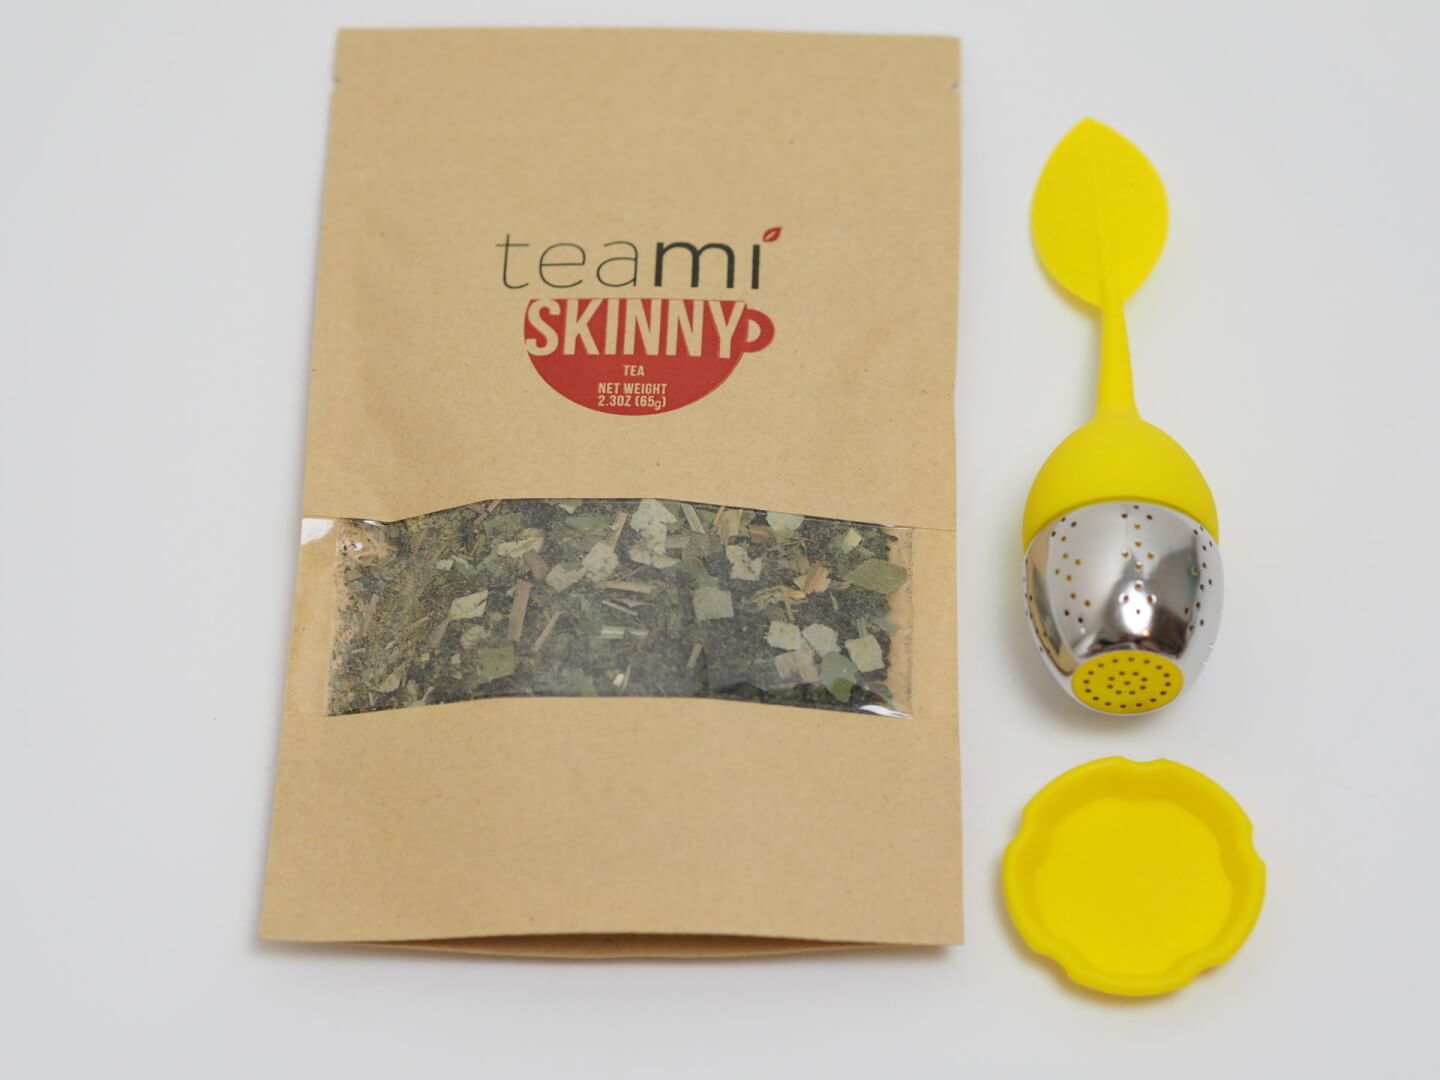 Teami Skinny Tea